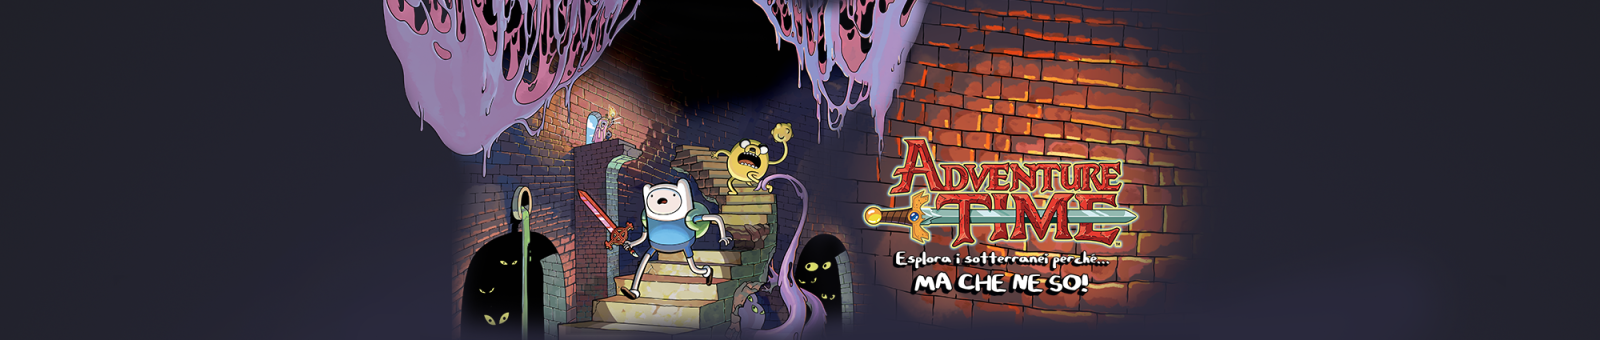 Adventure Time™: Esplora i sotterranei perché... MA CHE NE SO!